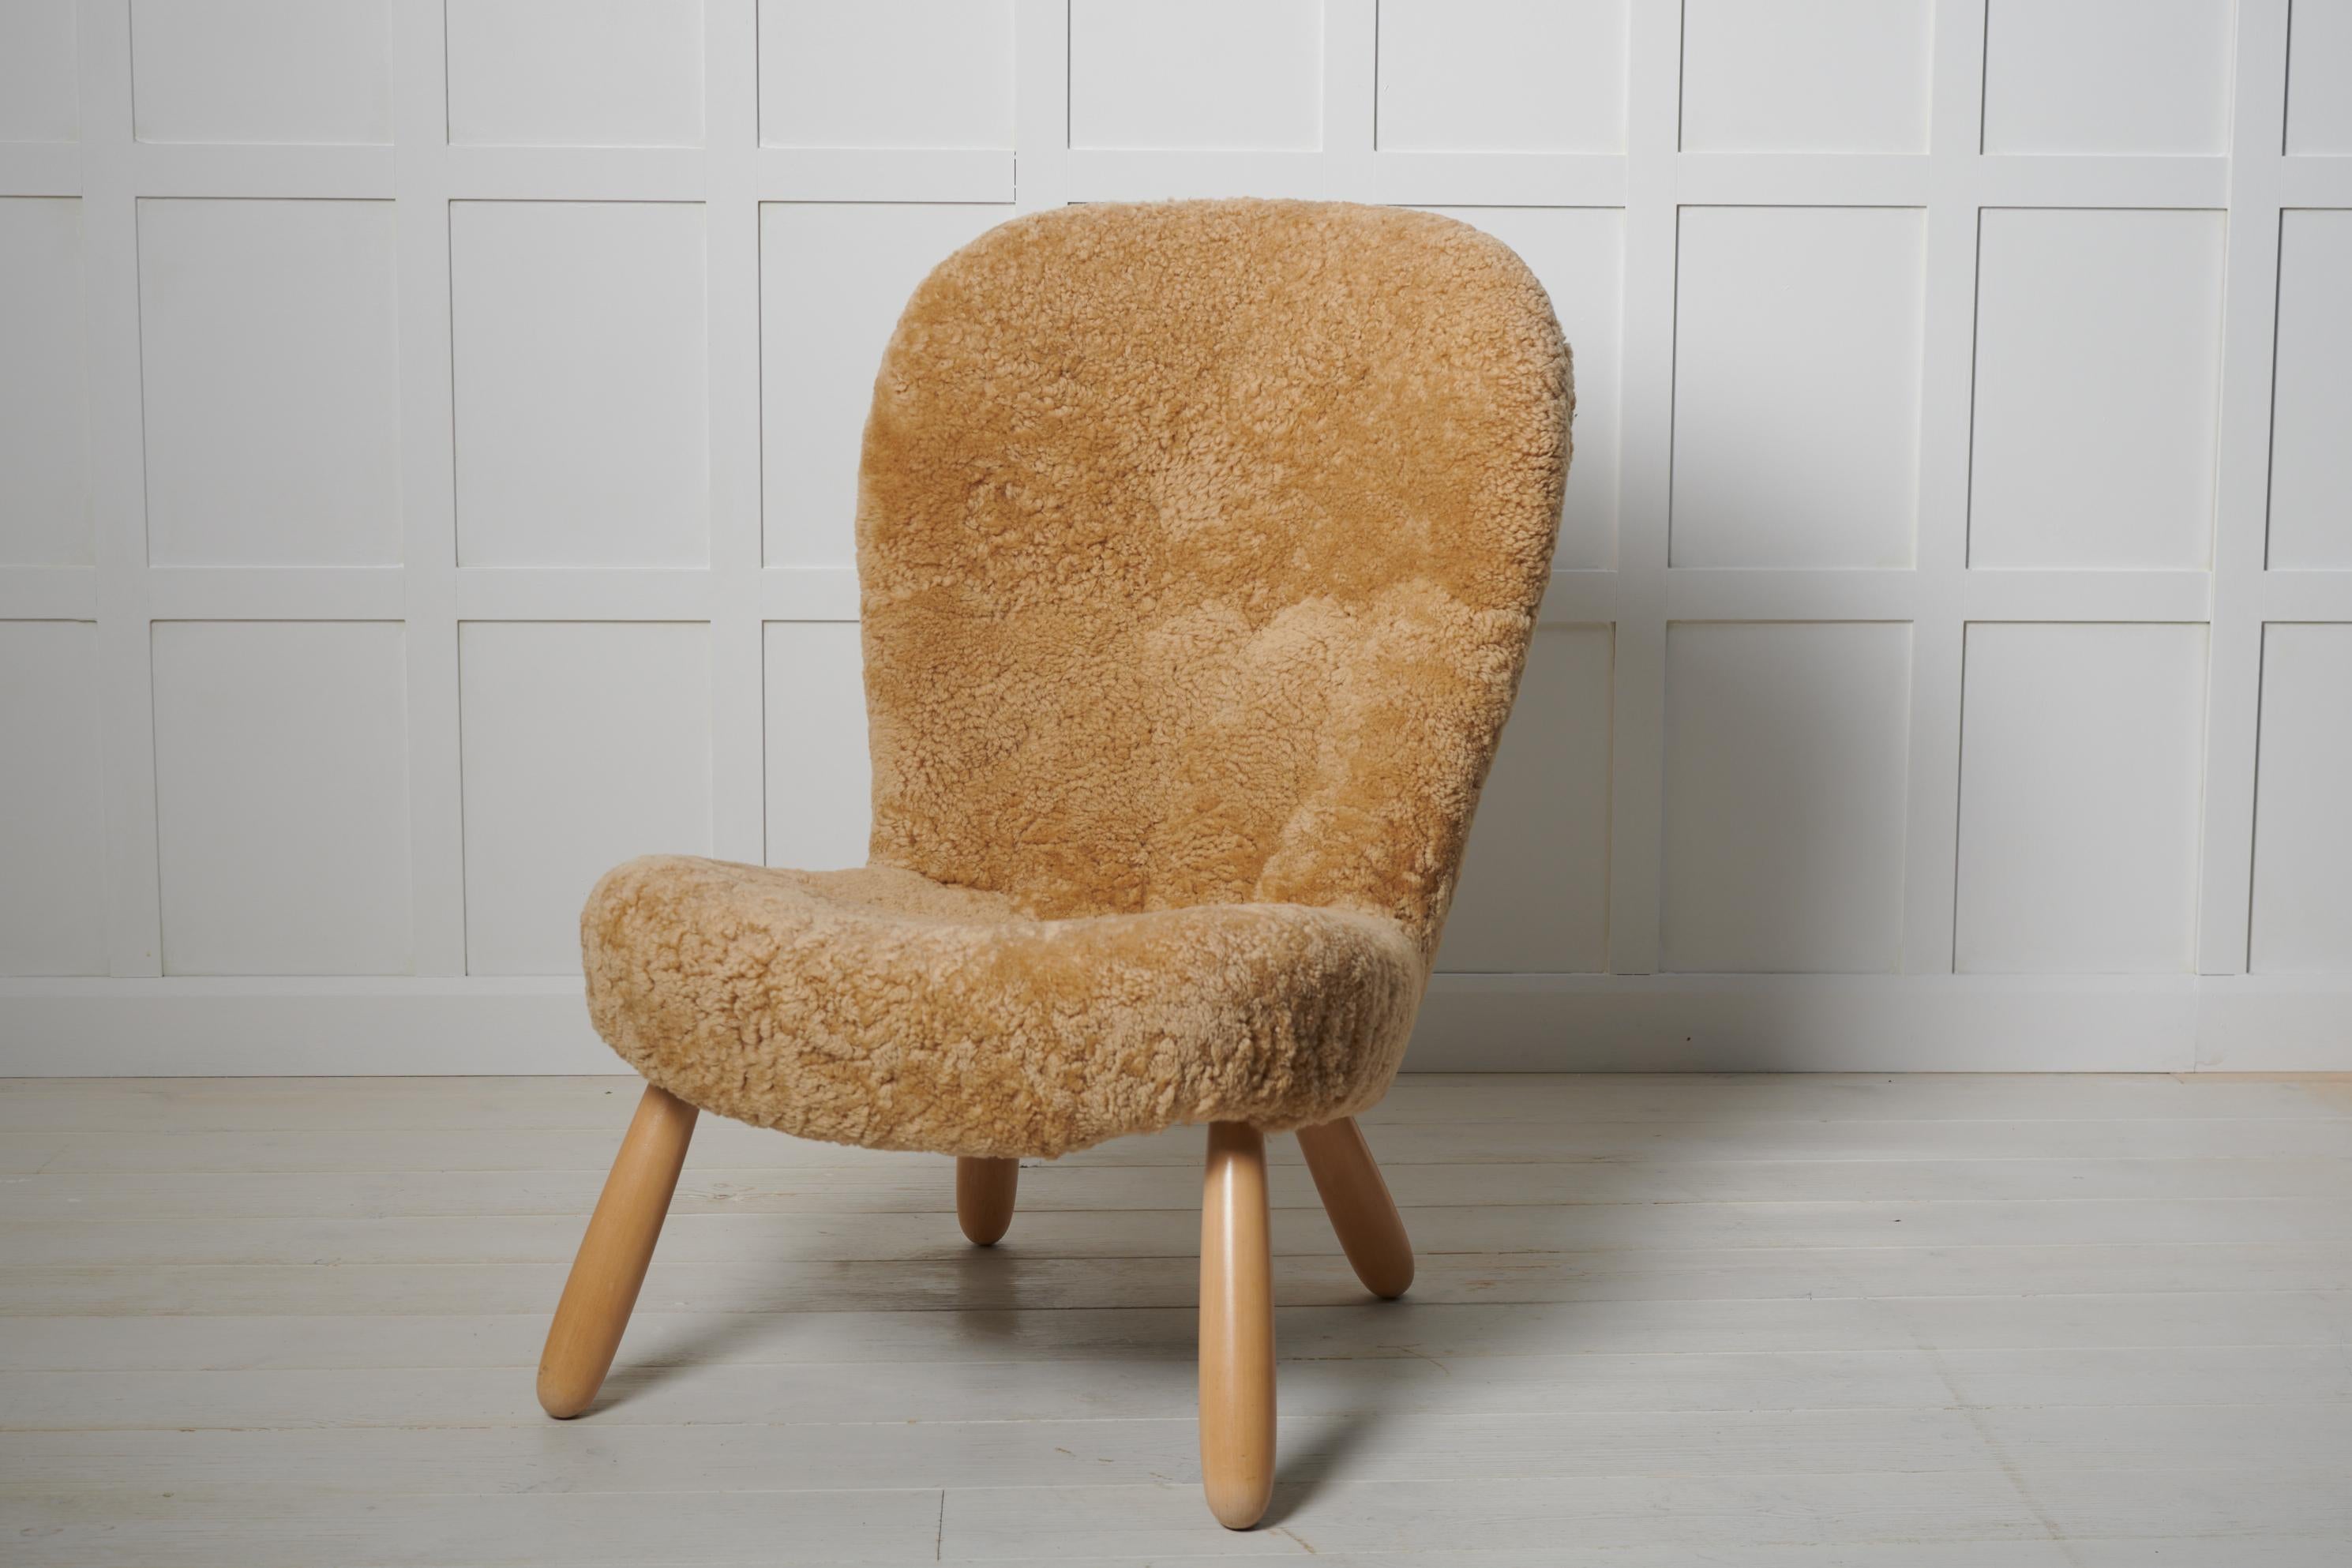 Seltener skandinavisch-moderner Clam Chair von Arnold Madsen, hergestellt von Madsen & Schubell. Dieser Stuhl ist ein echter Vintage-Stuhl, der in den 1940er Jahren in Dänemark hergestellt wurde. Er wurde vor kurzem vollständig restauriert und mit